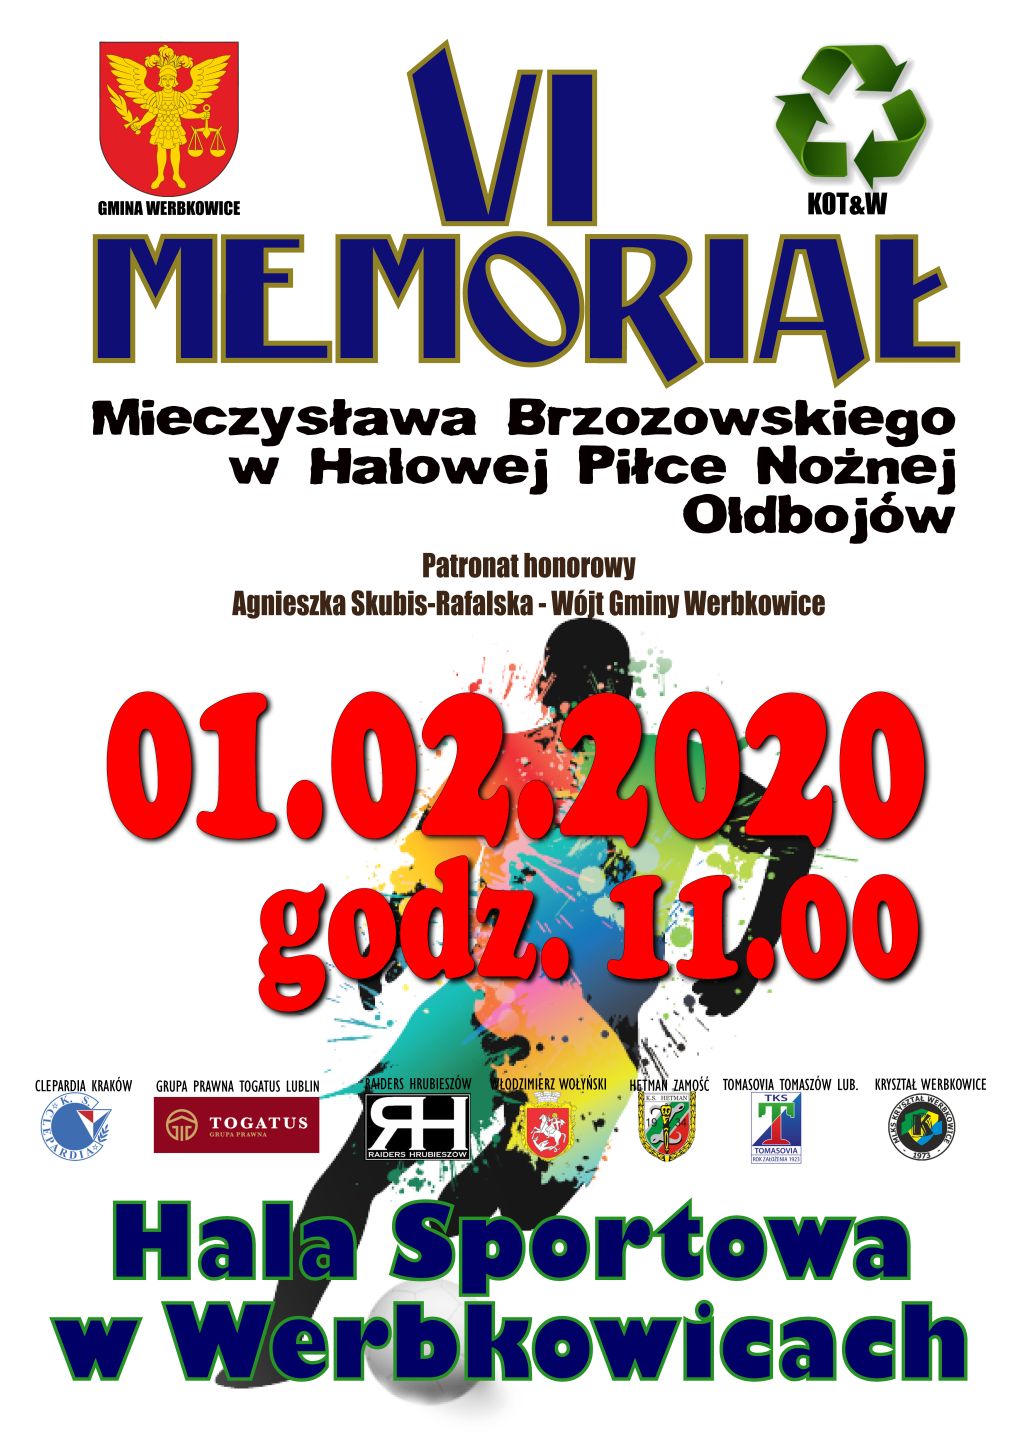 VI Memoriał Mieczysława Brzozowskiego